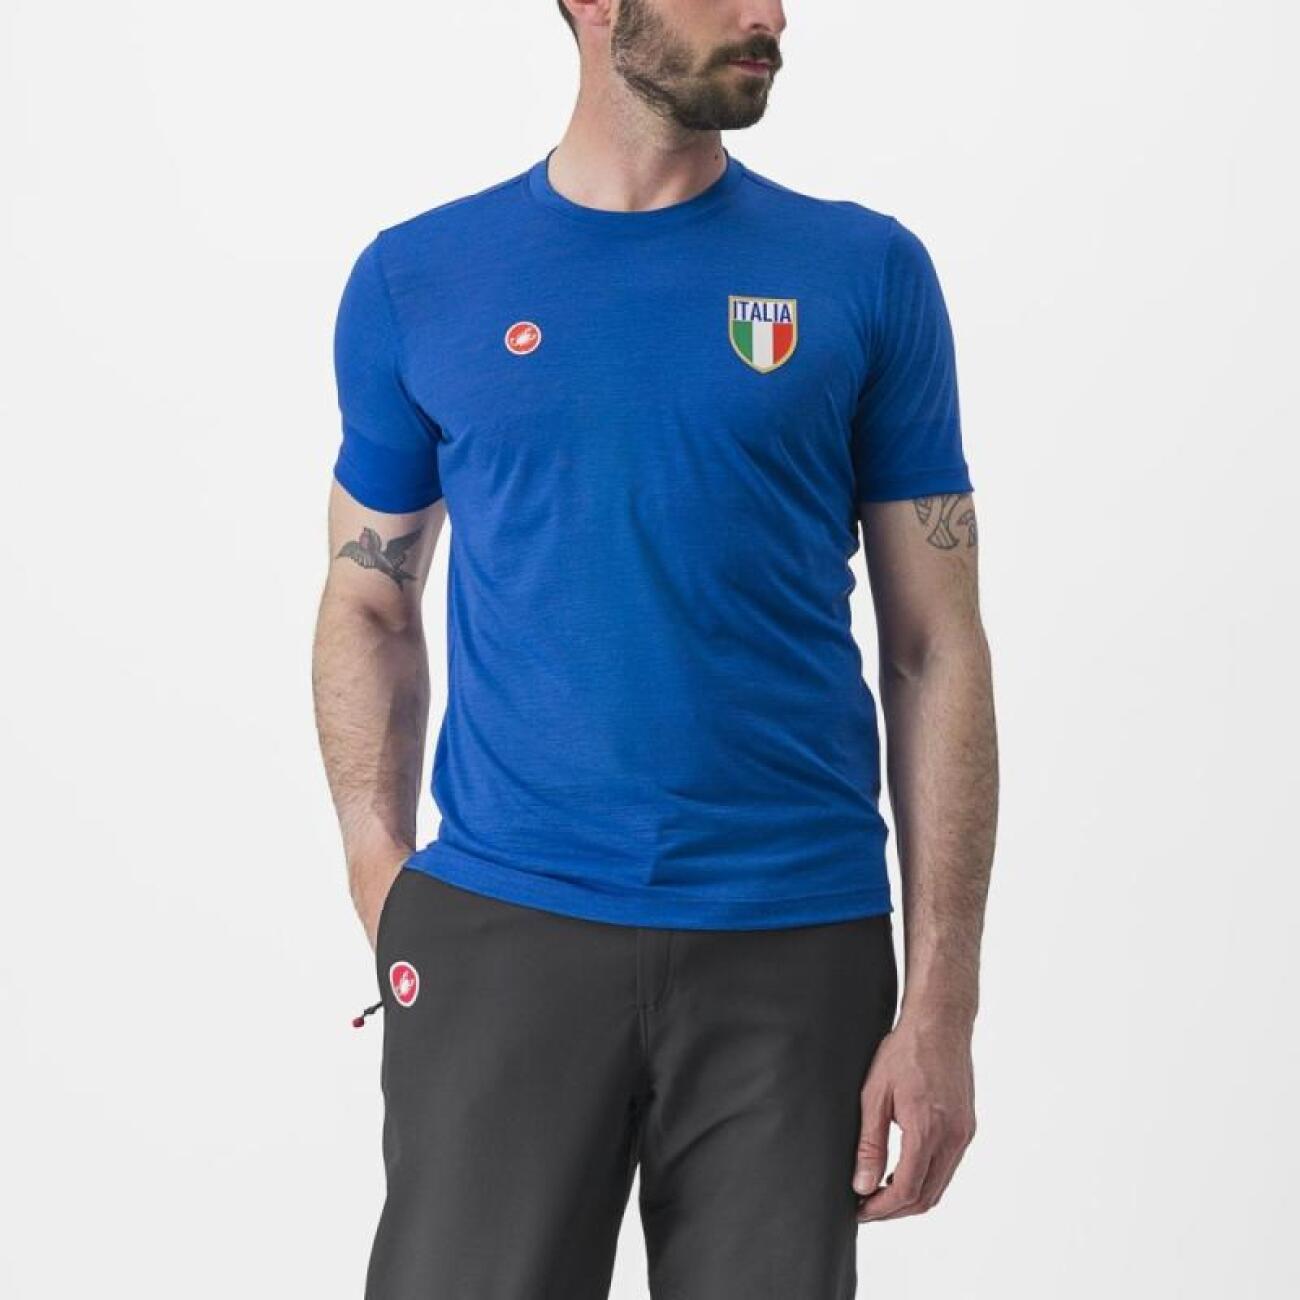 
                CASTELLI Cyklistické triko s krátkým rukávem - ITALIA MERINO - modrá 2XL
            